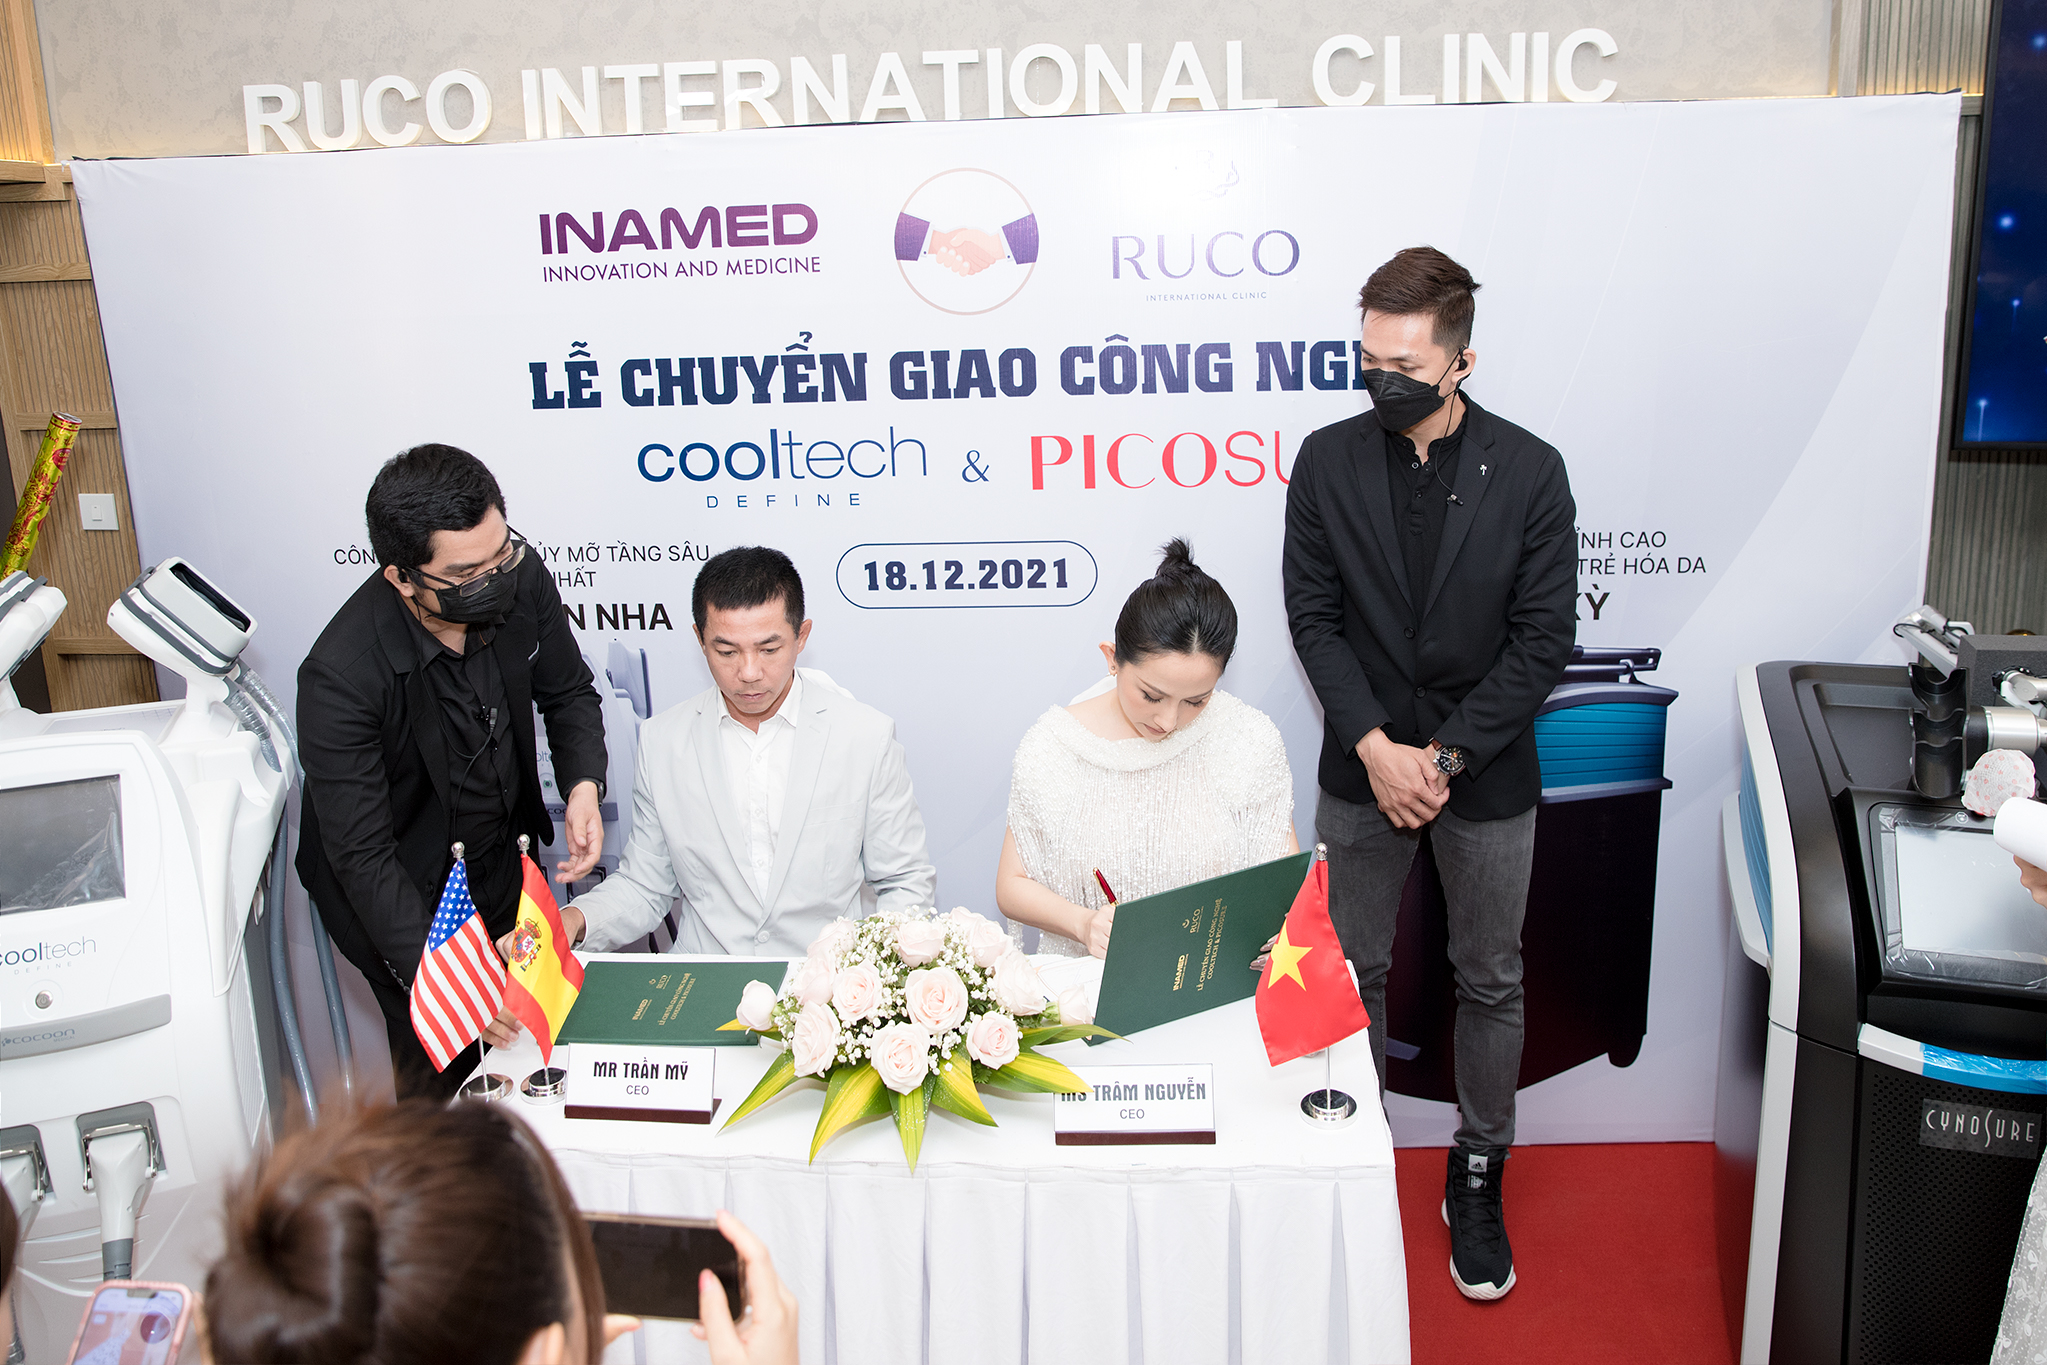 Công nghệ được Ruco International Clinic chuyển giao chính hãng tại sự kiện lớn vừa qua.